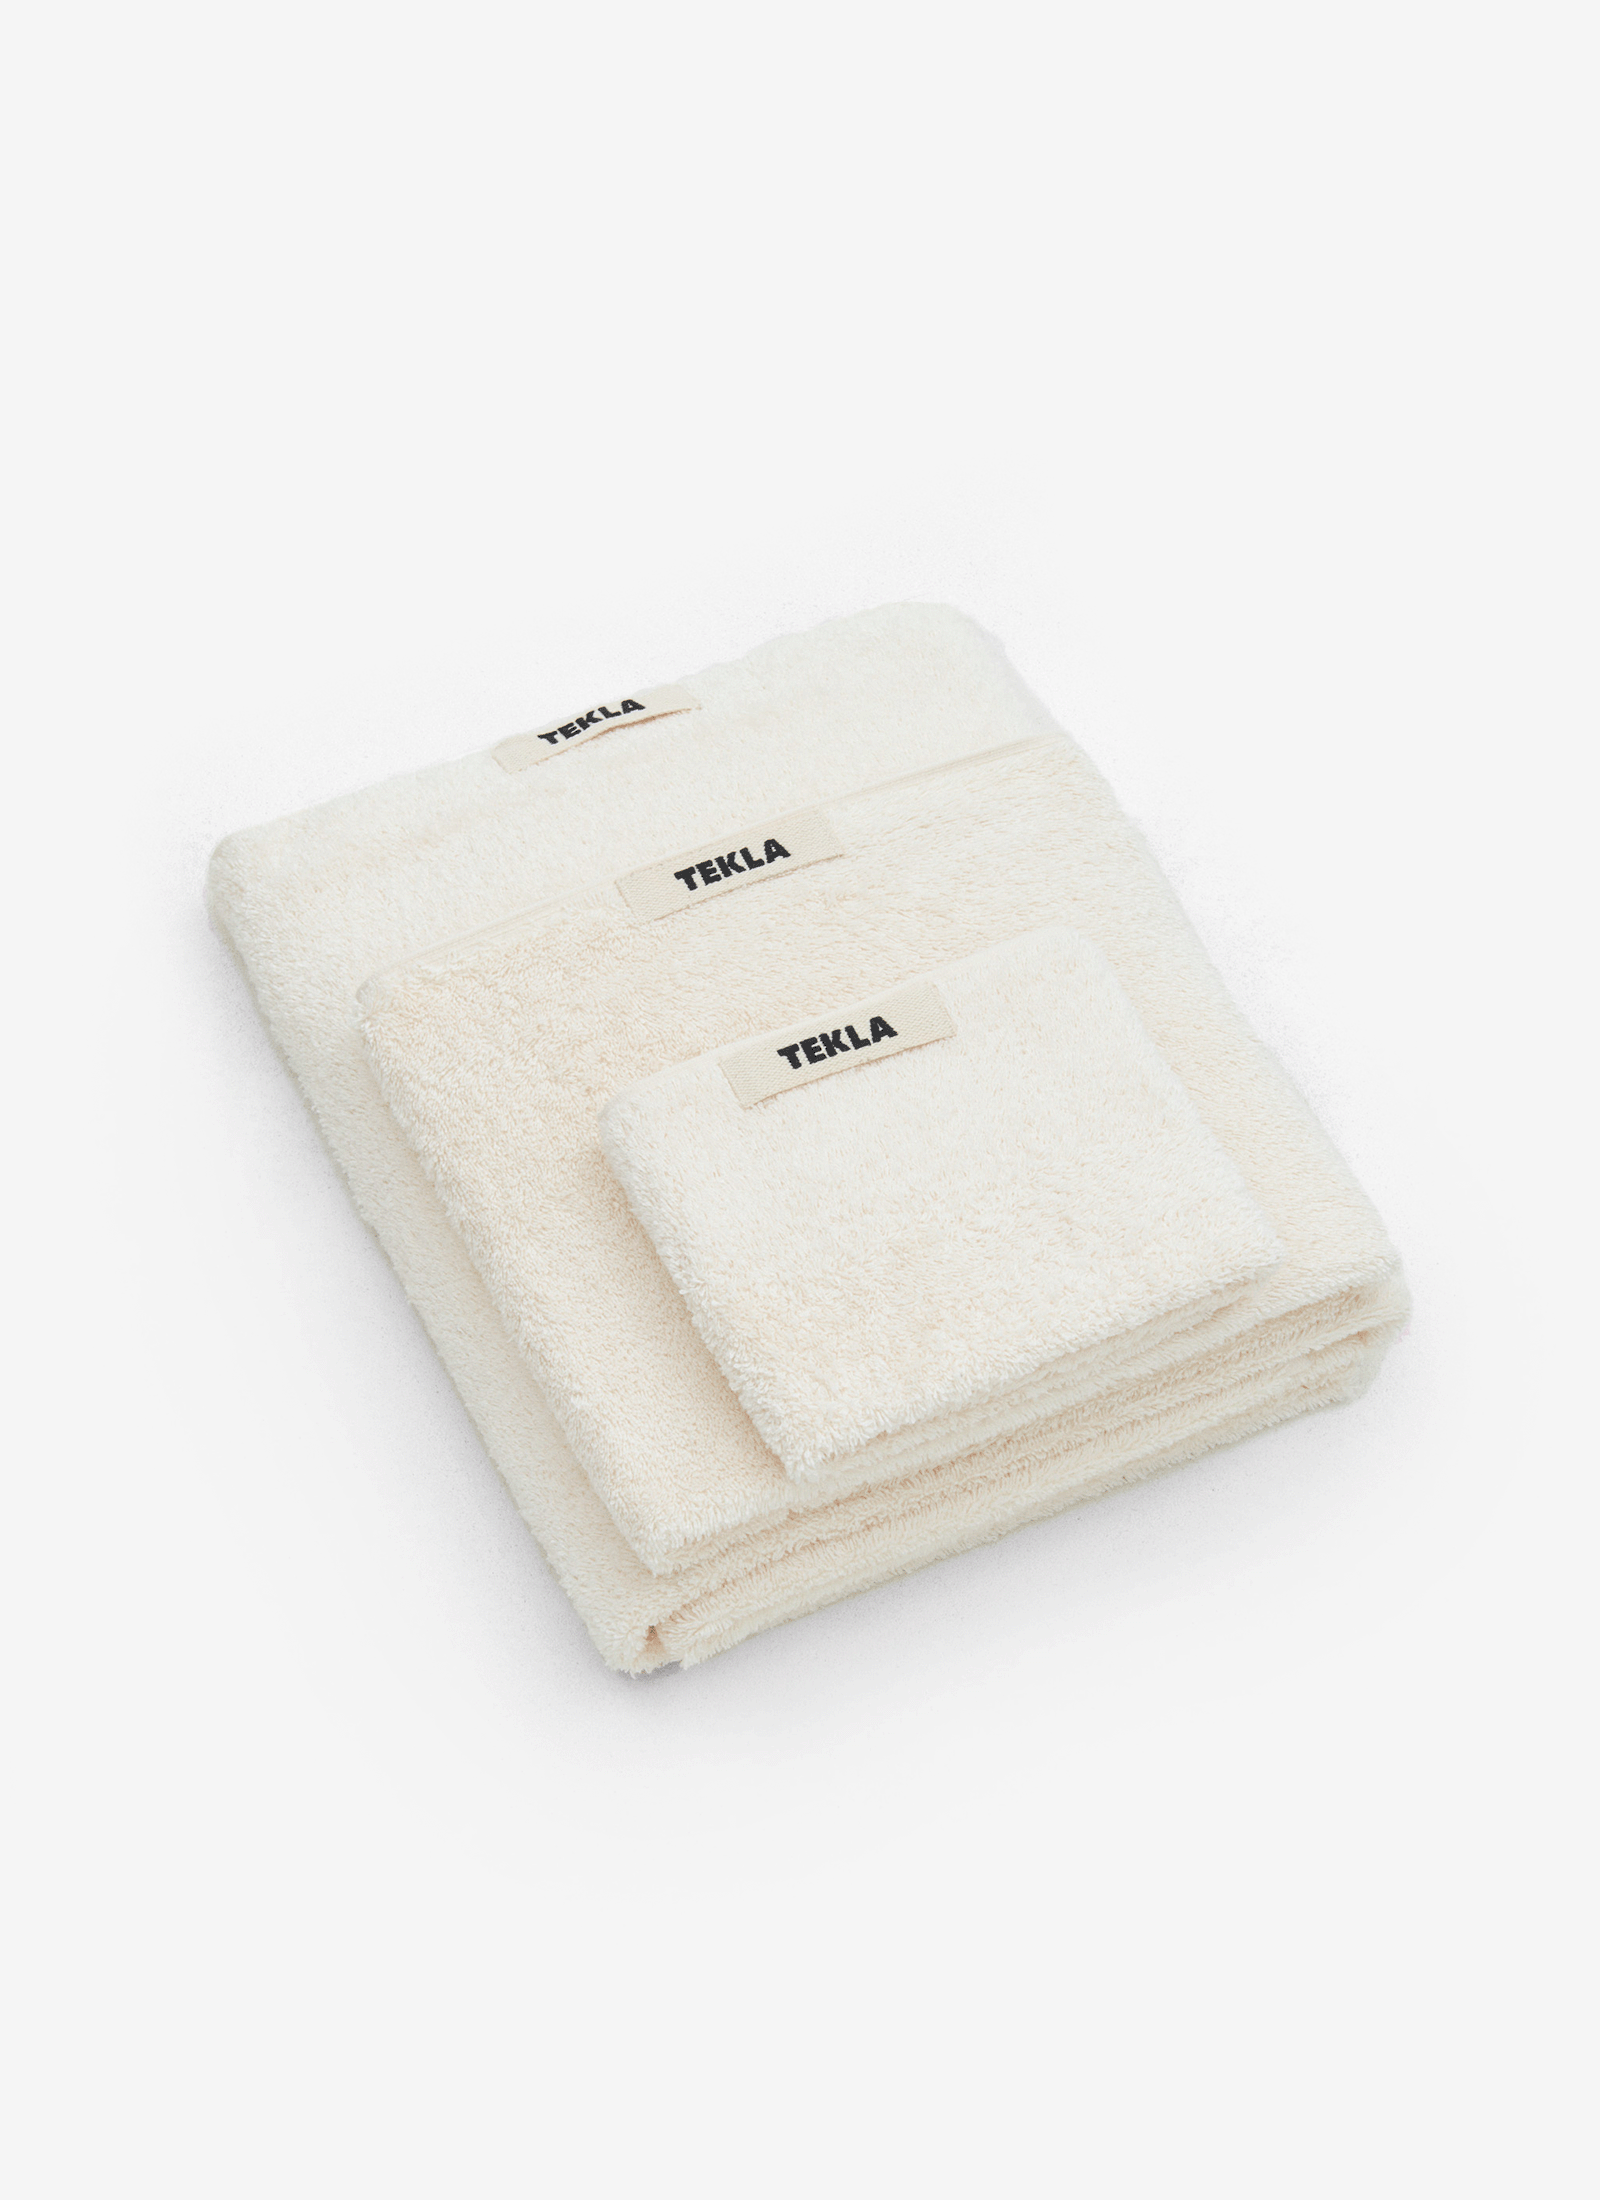 Ivory Towels - 4pc Set